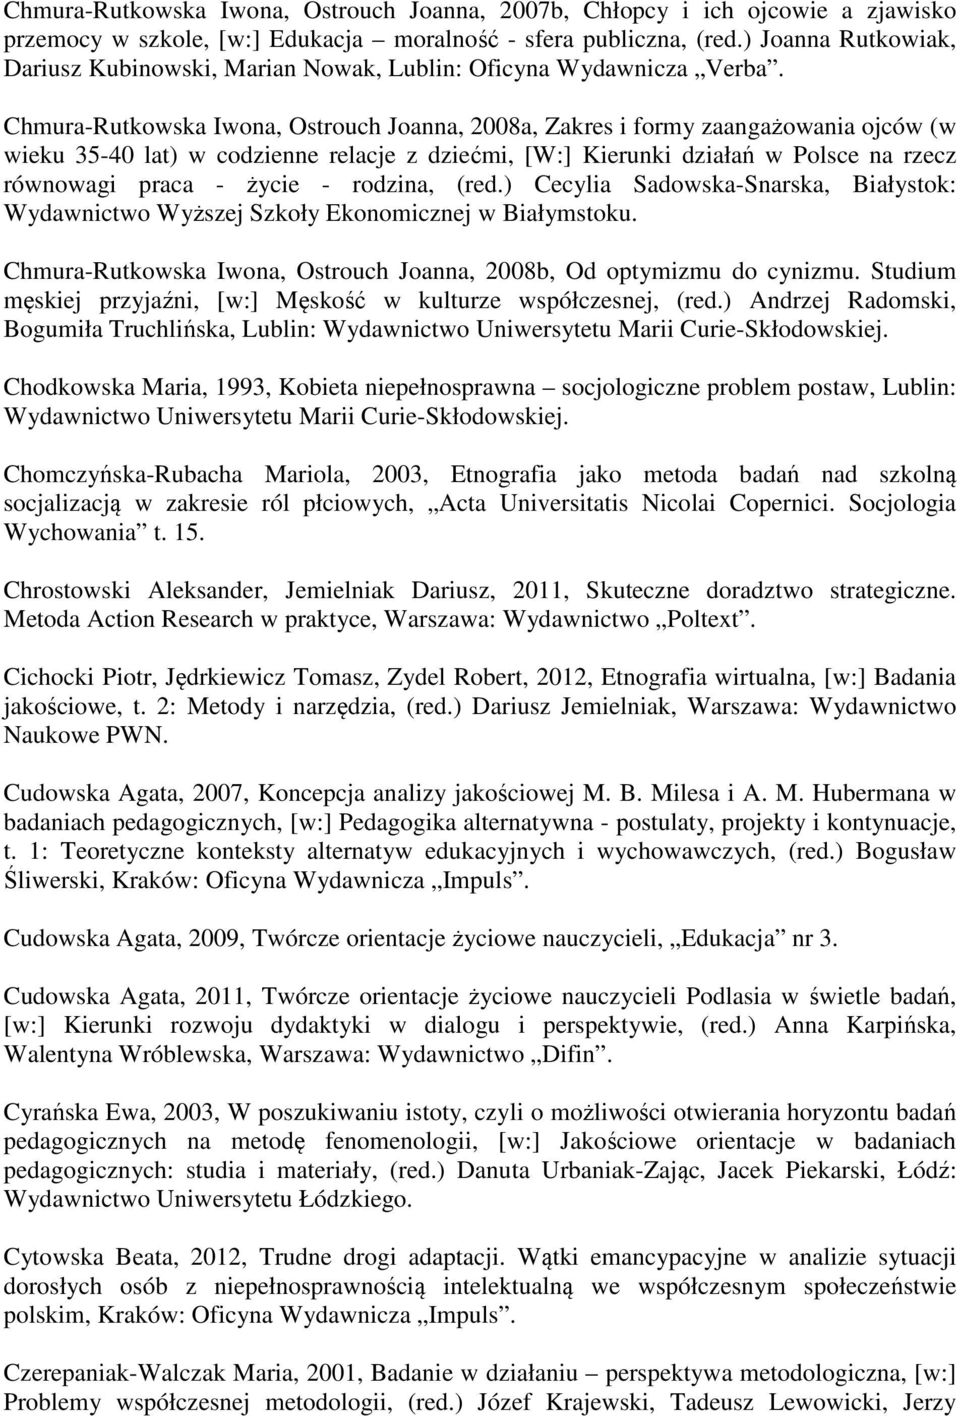 Chmura-Rutkowska Iwona, Ostrouch Joanna, 2008a, Zakres i formy zaangażowania ojców (w wieku 35-40 lat) w codzienne relacje z dziećmi, [W:] Kierunki działań w Polsce na rzecz równowagi praca - życie -